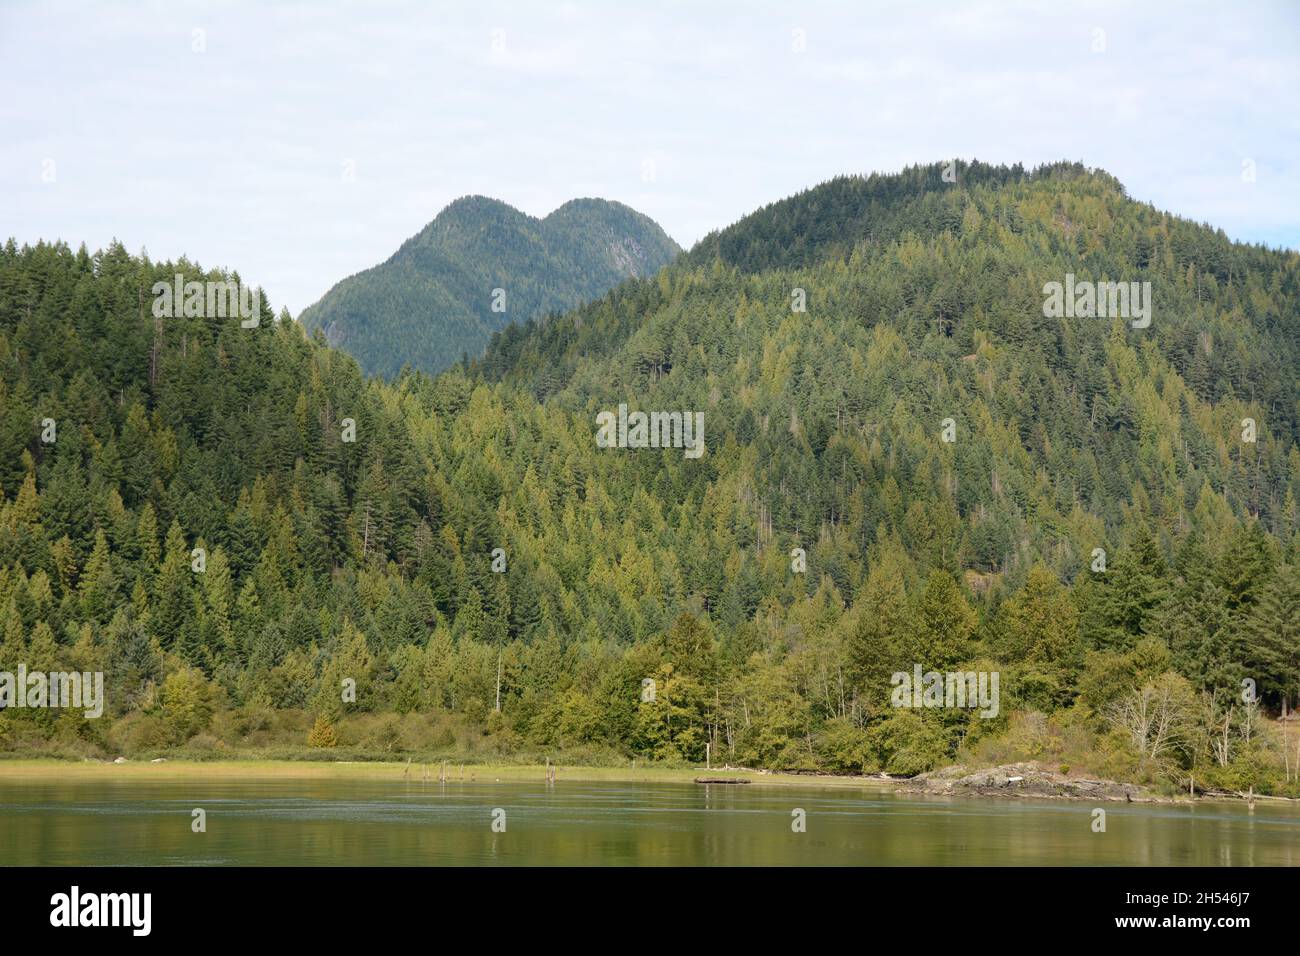 Les montagnes côtières et la forêt le long de la rivière Pitt et du parc régional de Widgeon Marsh, près de Pitt Meadows, Colombie-Britannique, Canada. Banque D'Images